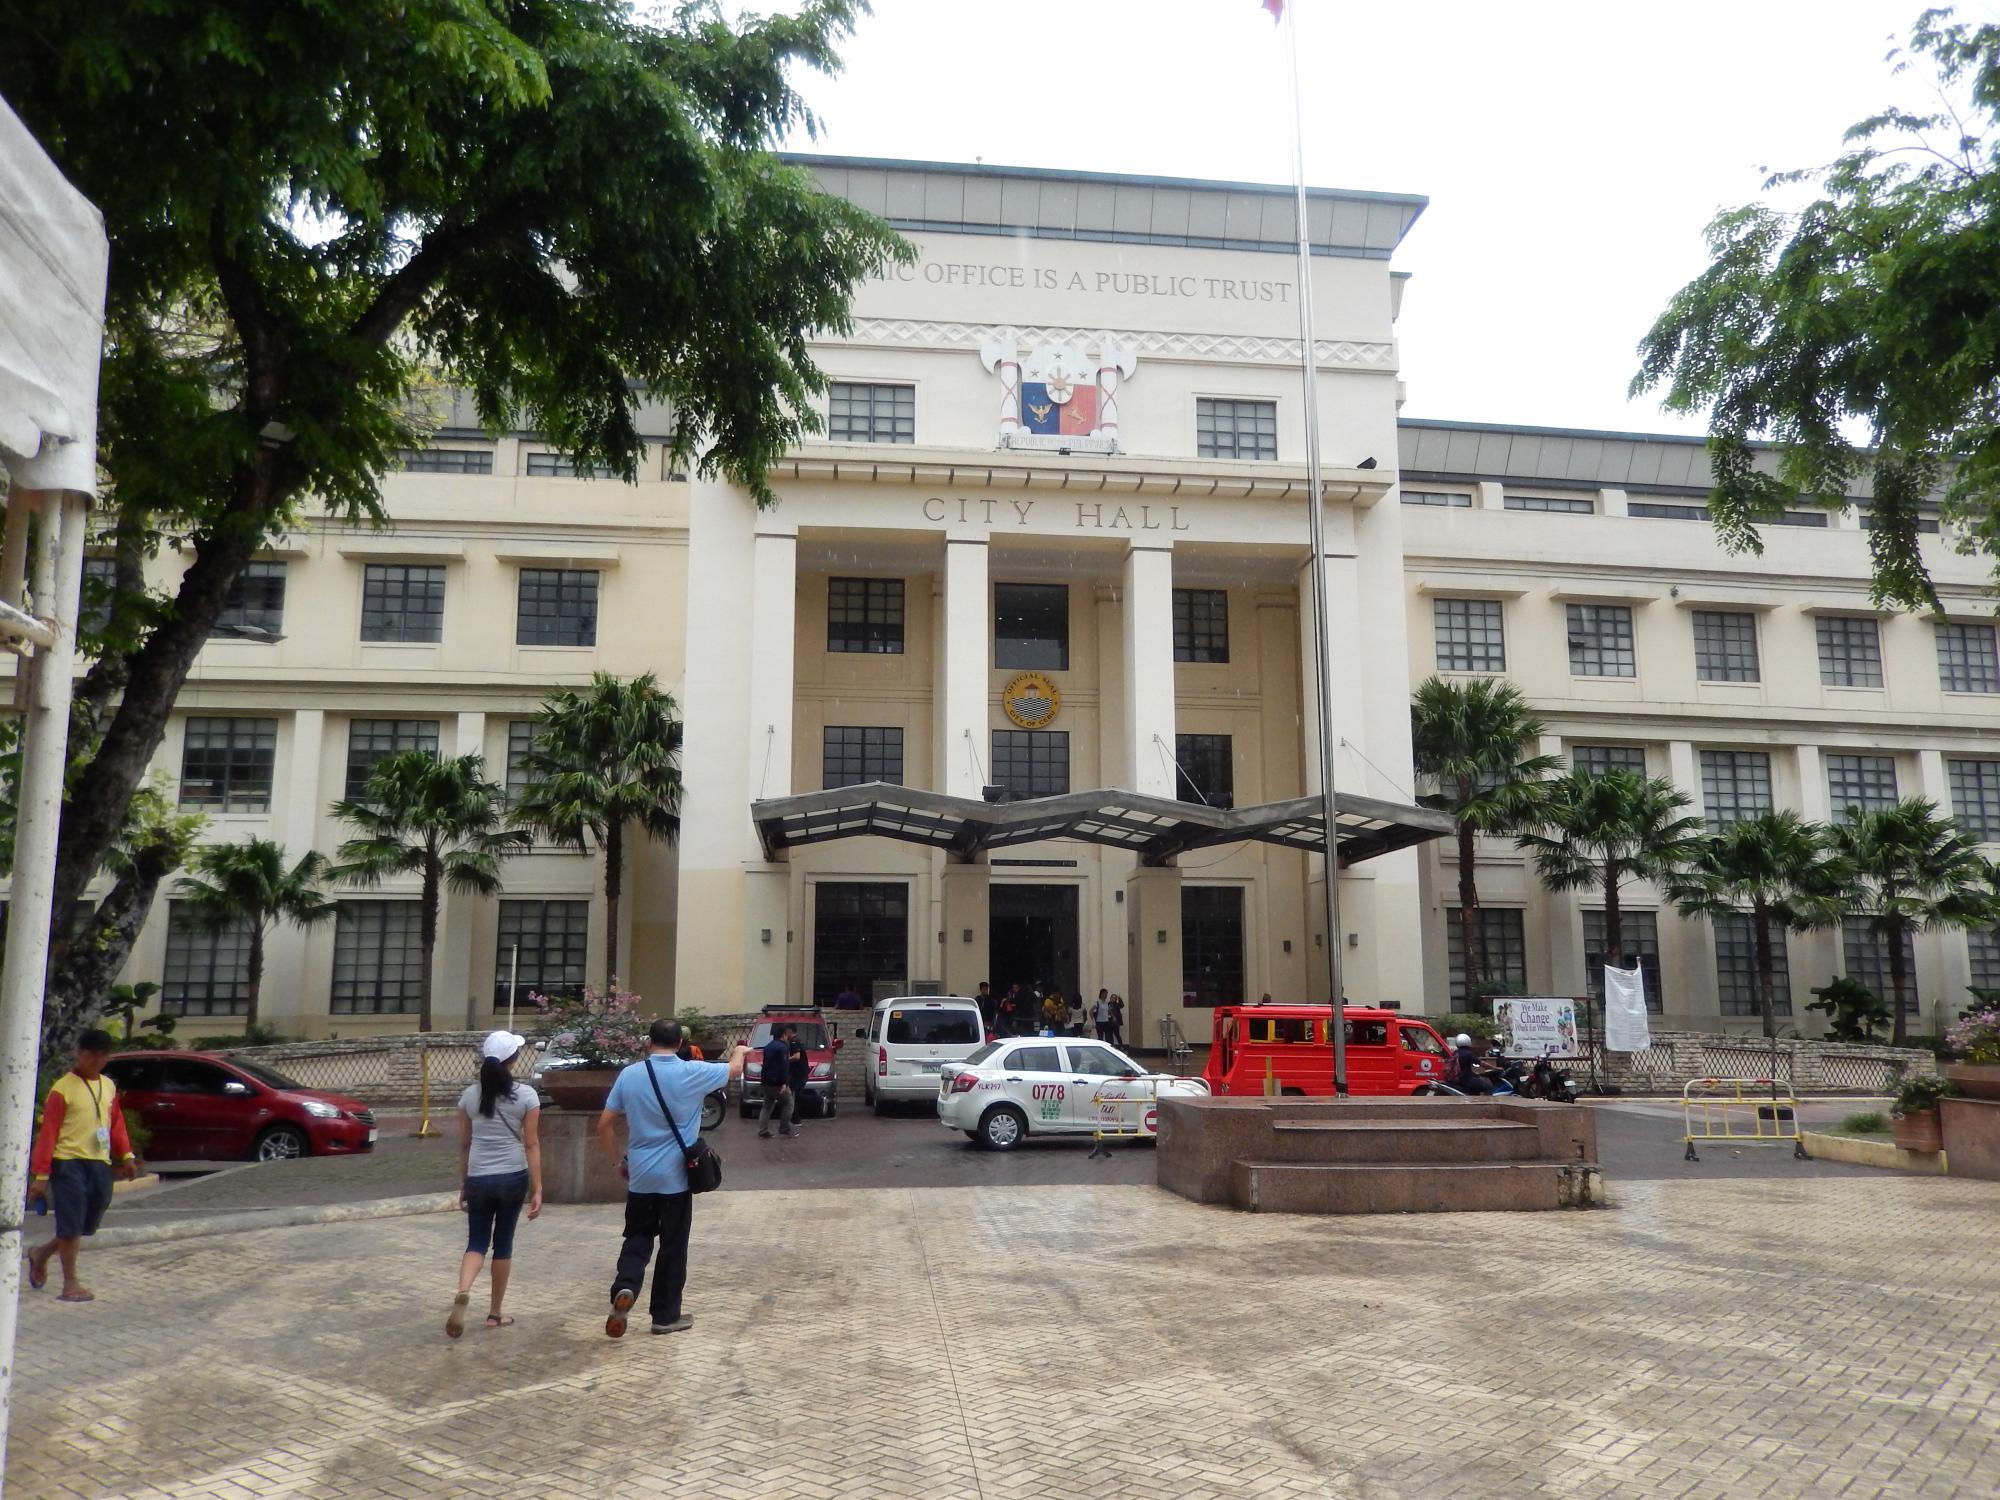 Cebu (2017) - Cebu City Hall